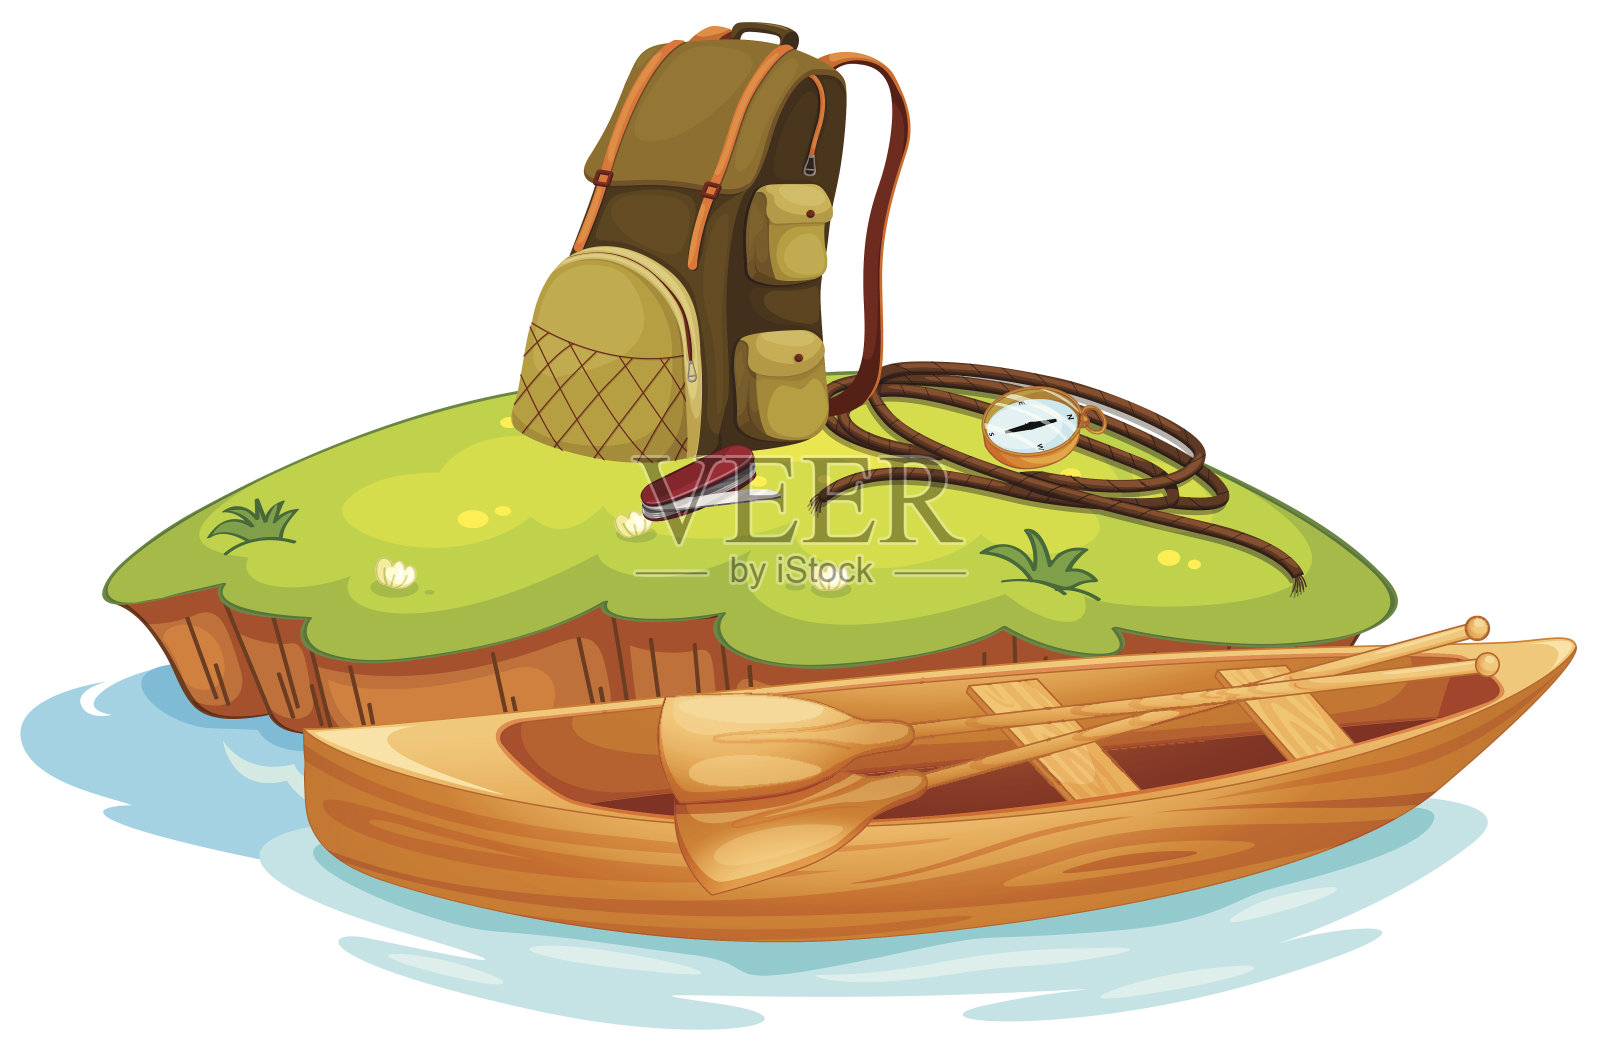 各种野营用品和独木舟插画图片素材